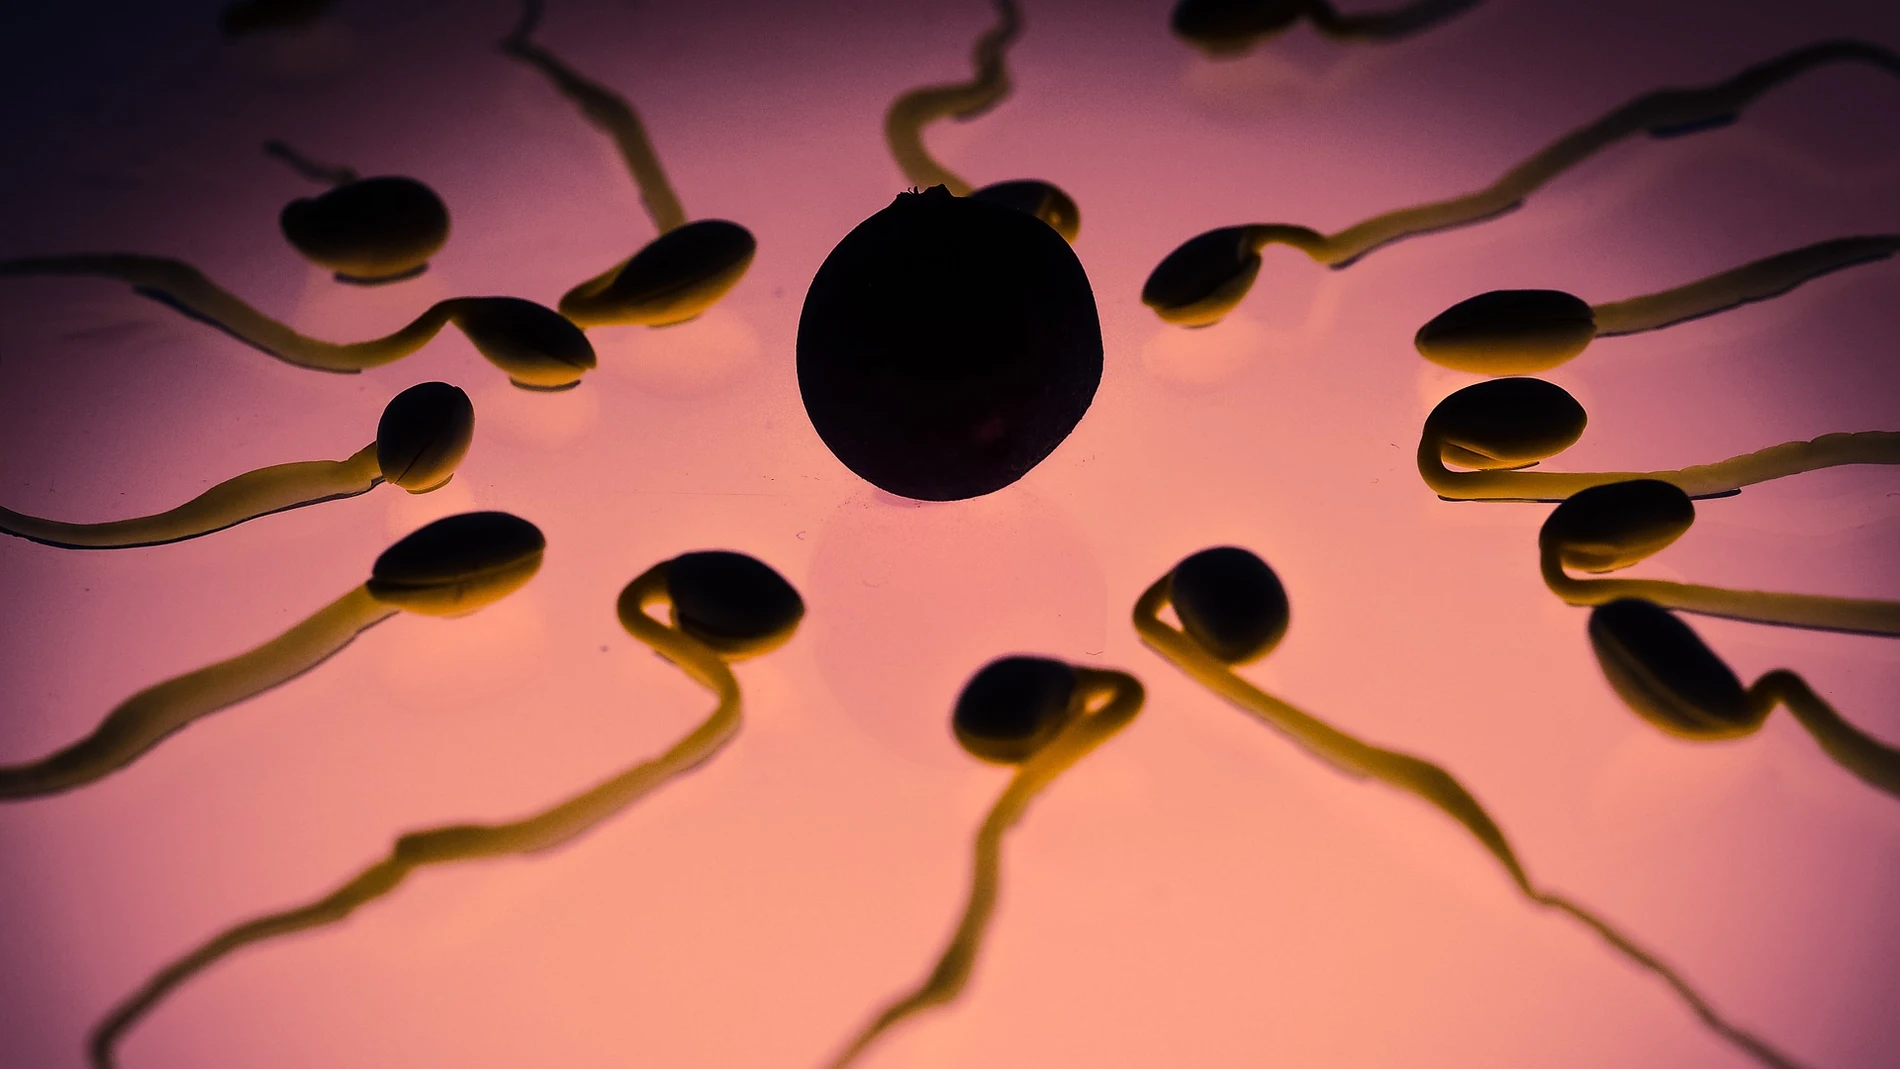 Un ginecólogo utilizó su propio esperma para inseminar a más de 40 mujeres